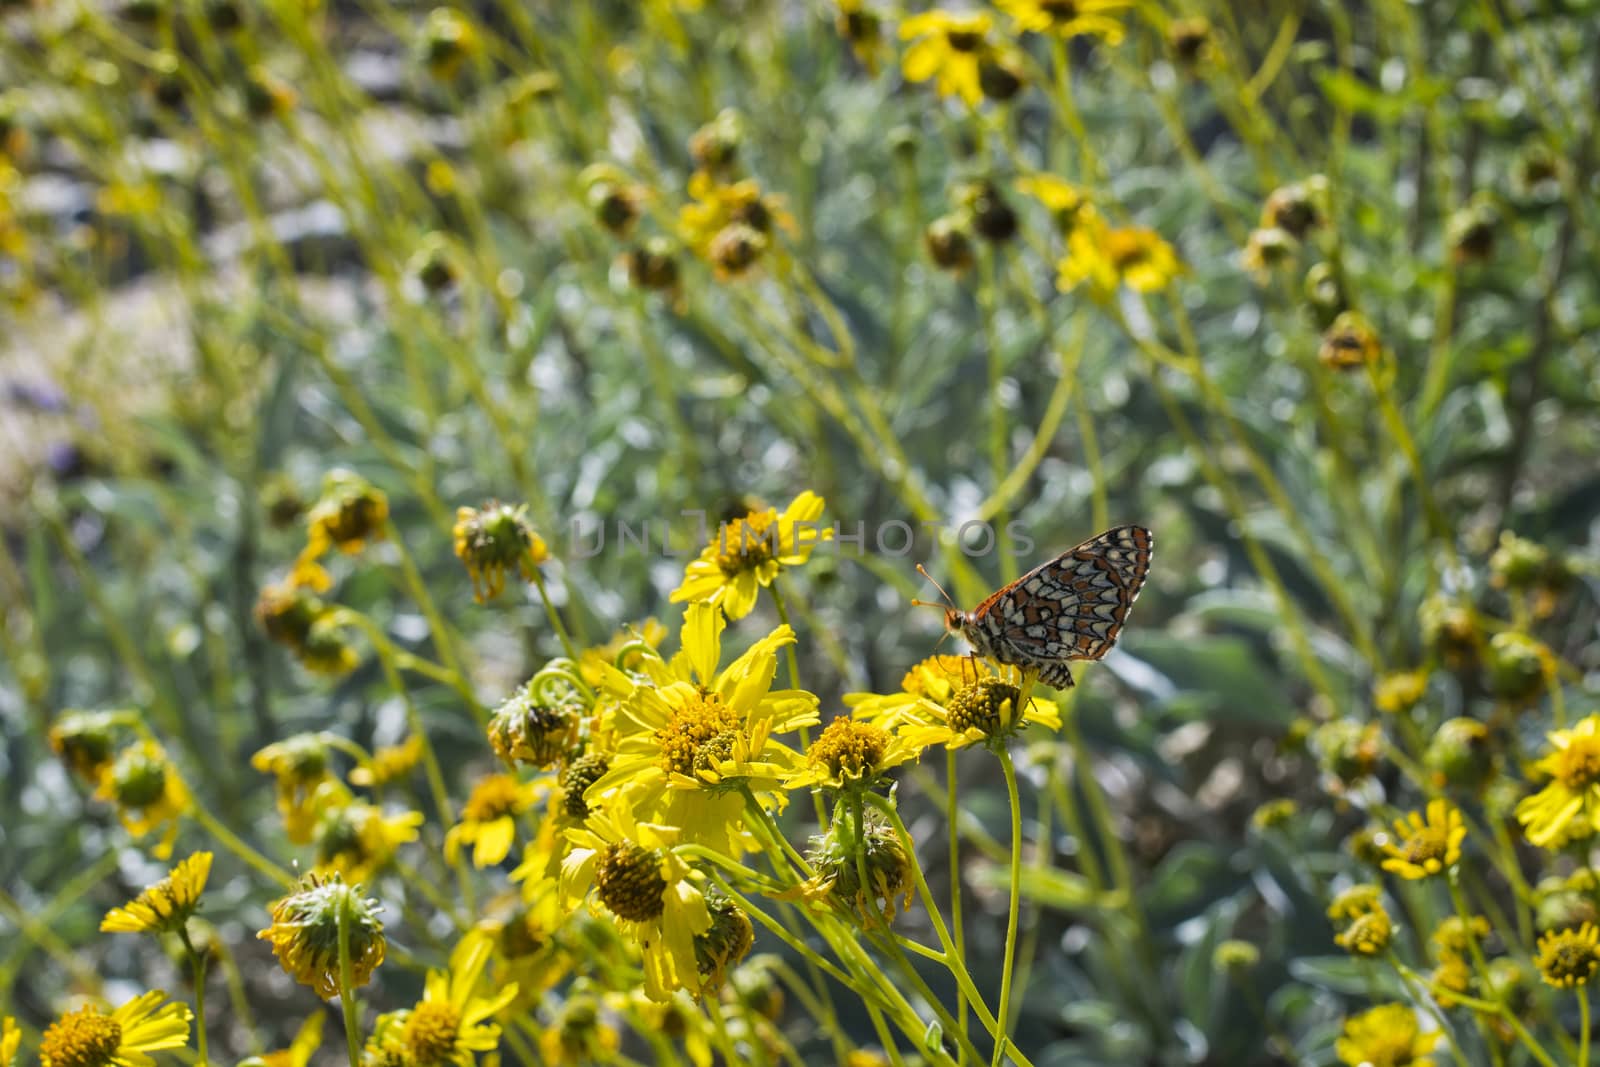 Butterfly on a Desert Plant by patricklienin